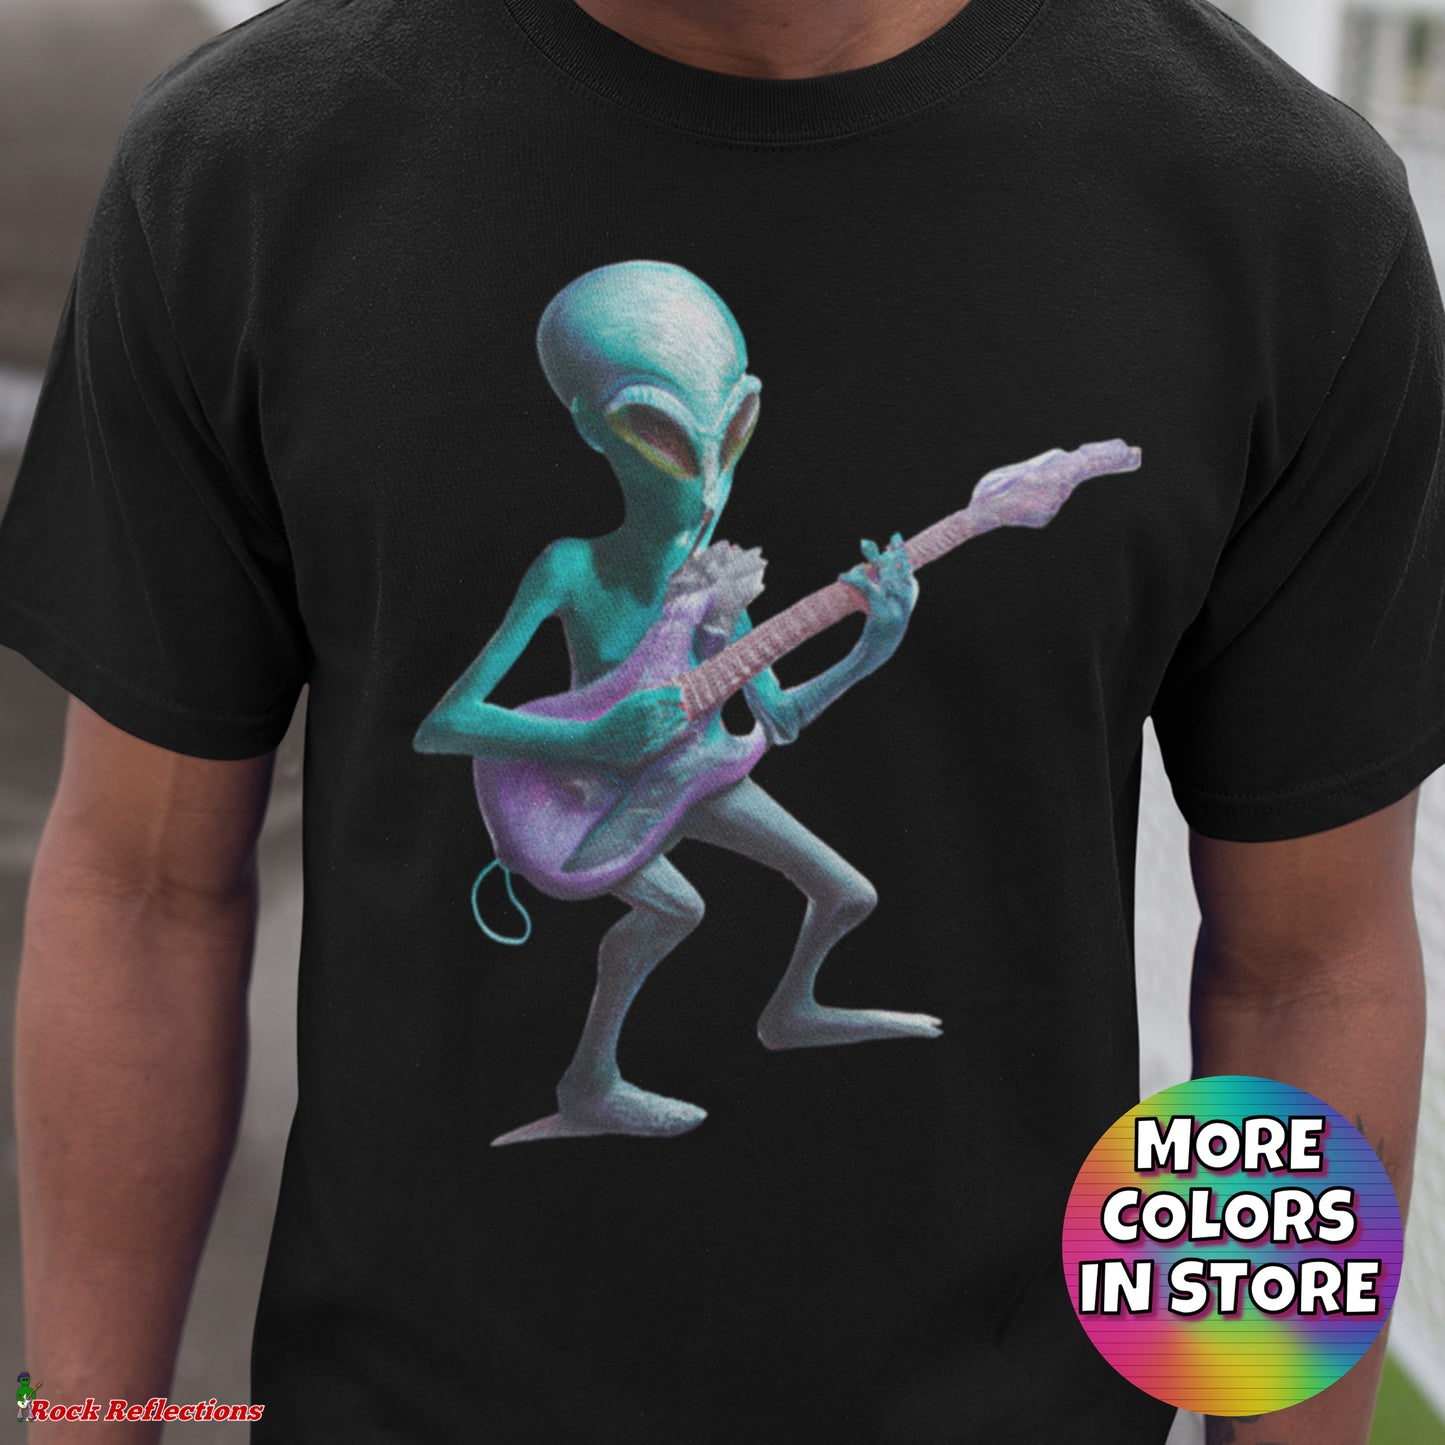 Alien Guitarist T-Shirt SPOD